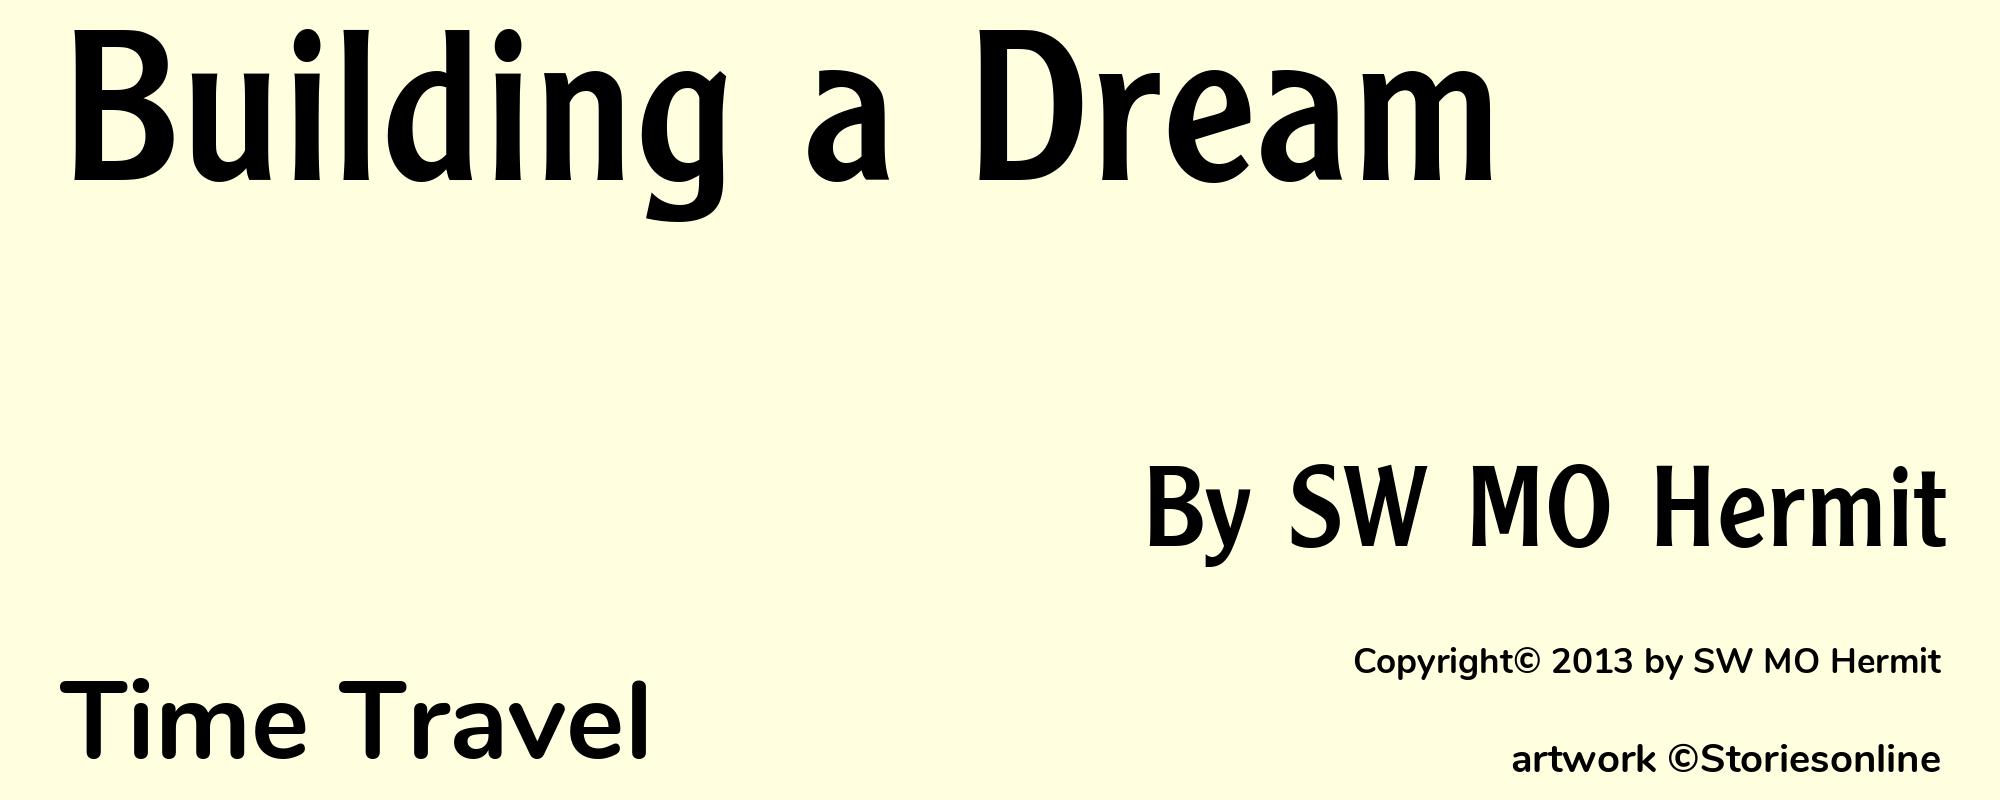 Building a Dream - Cover